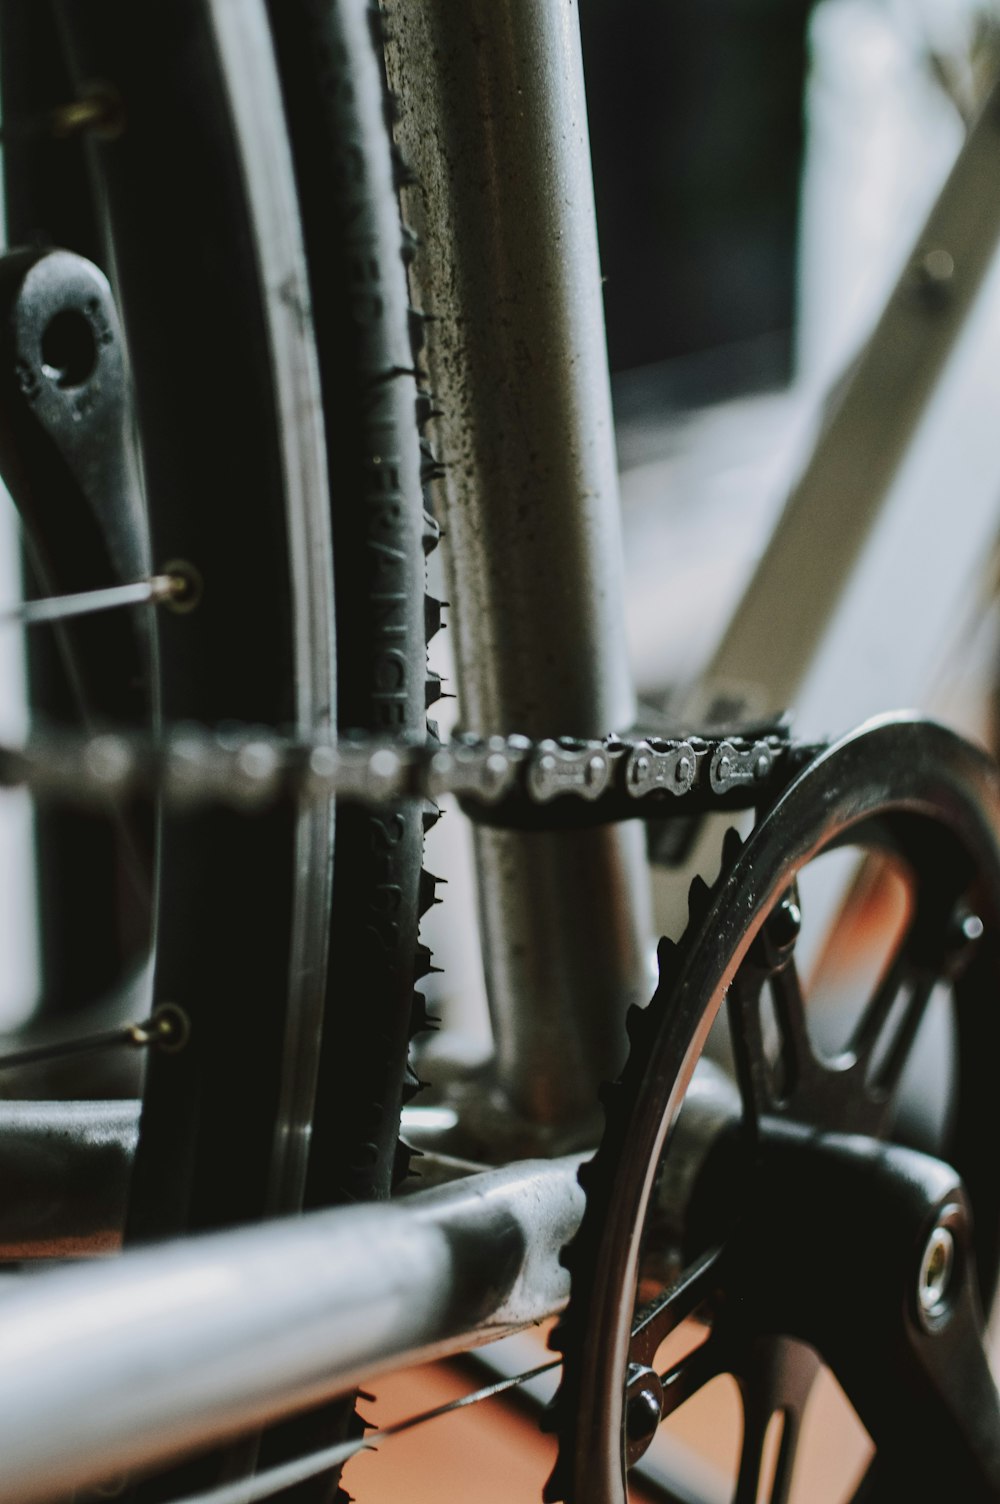 Un primer plano de los engranajes y la cadena de una bicicleta